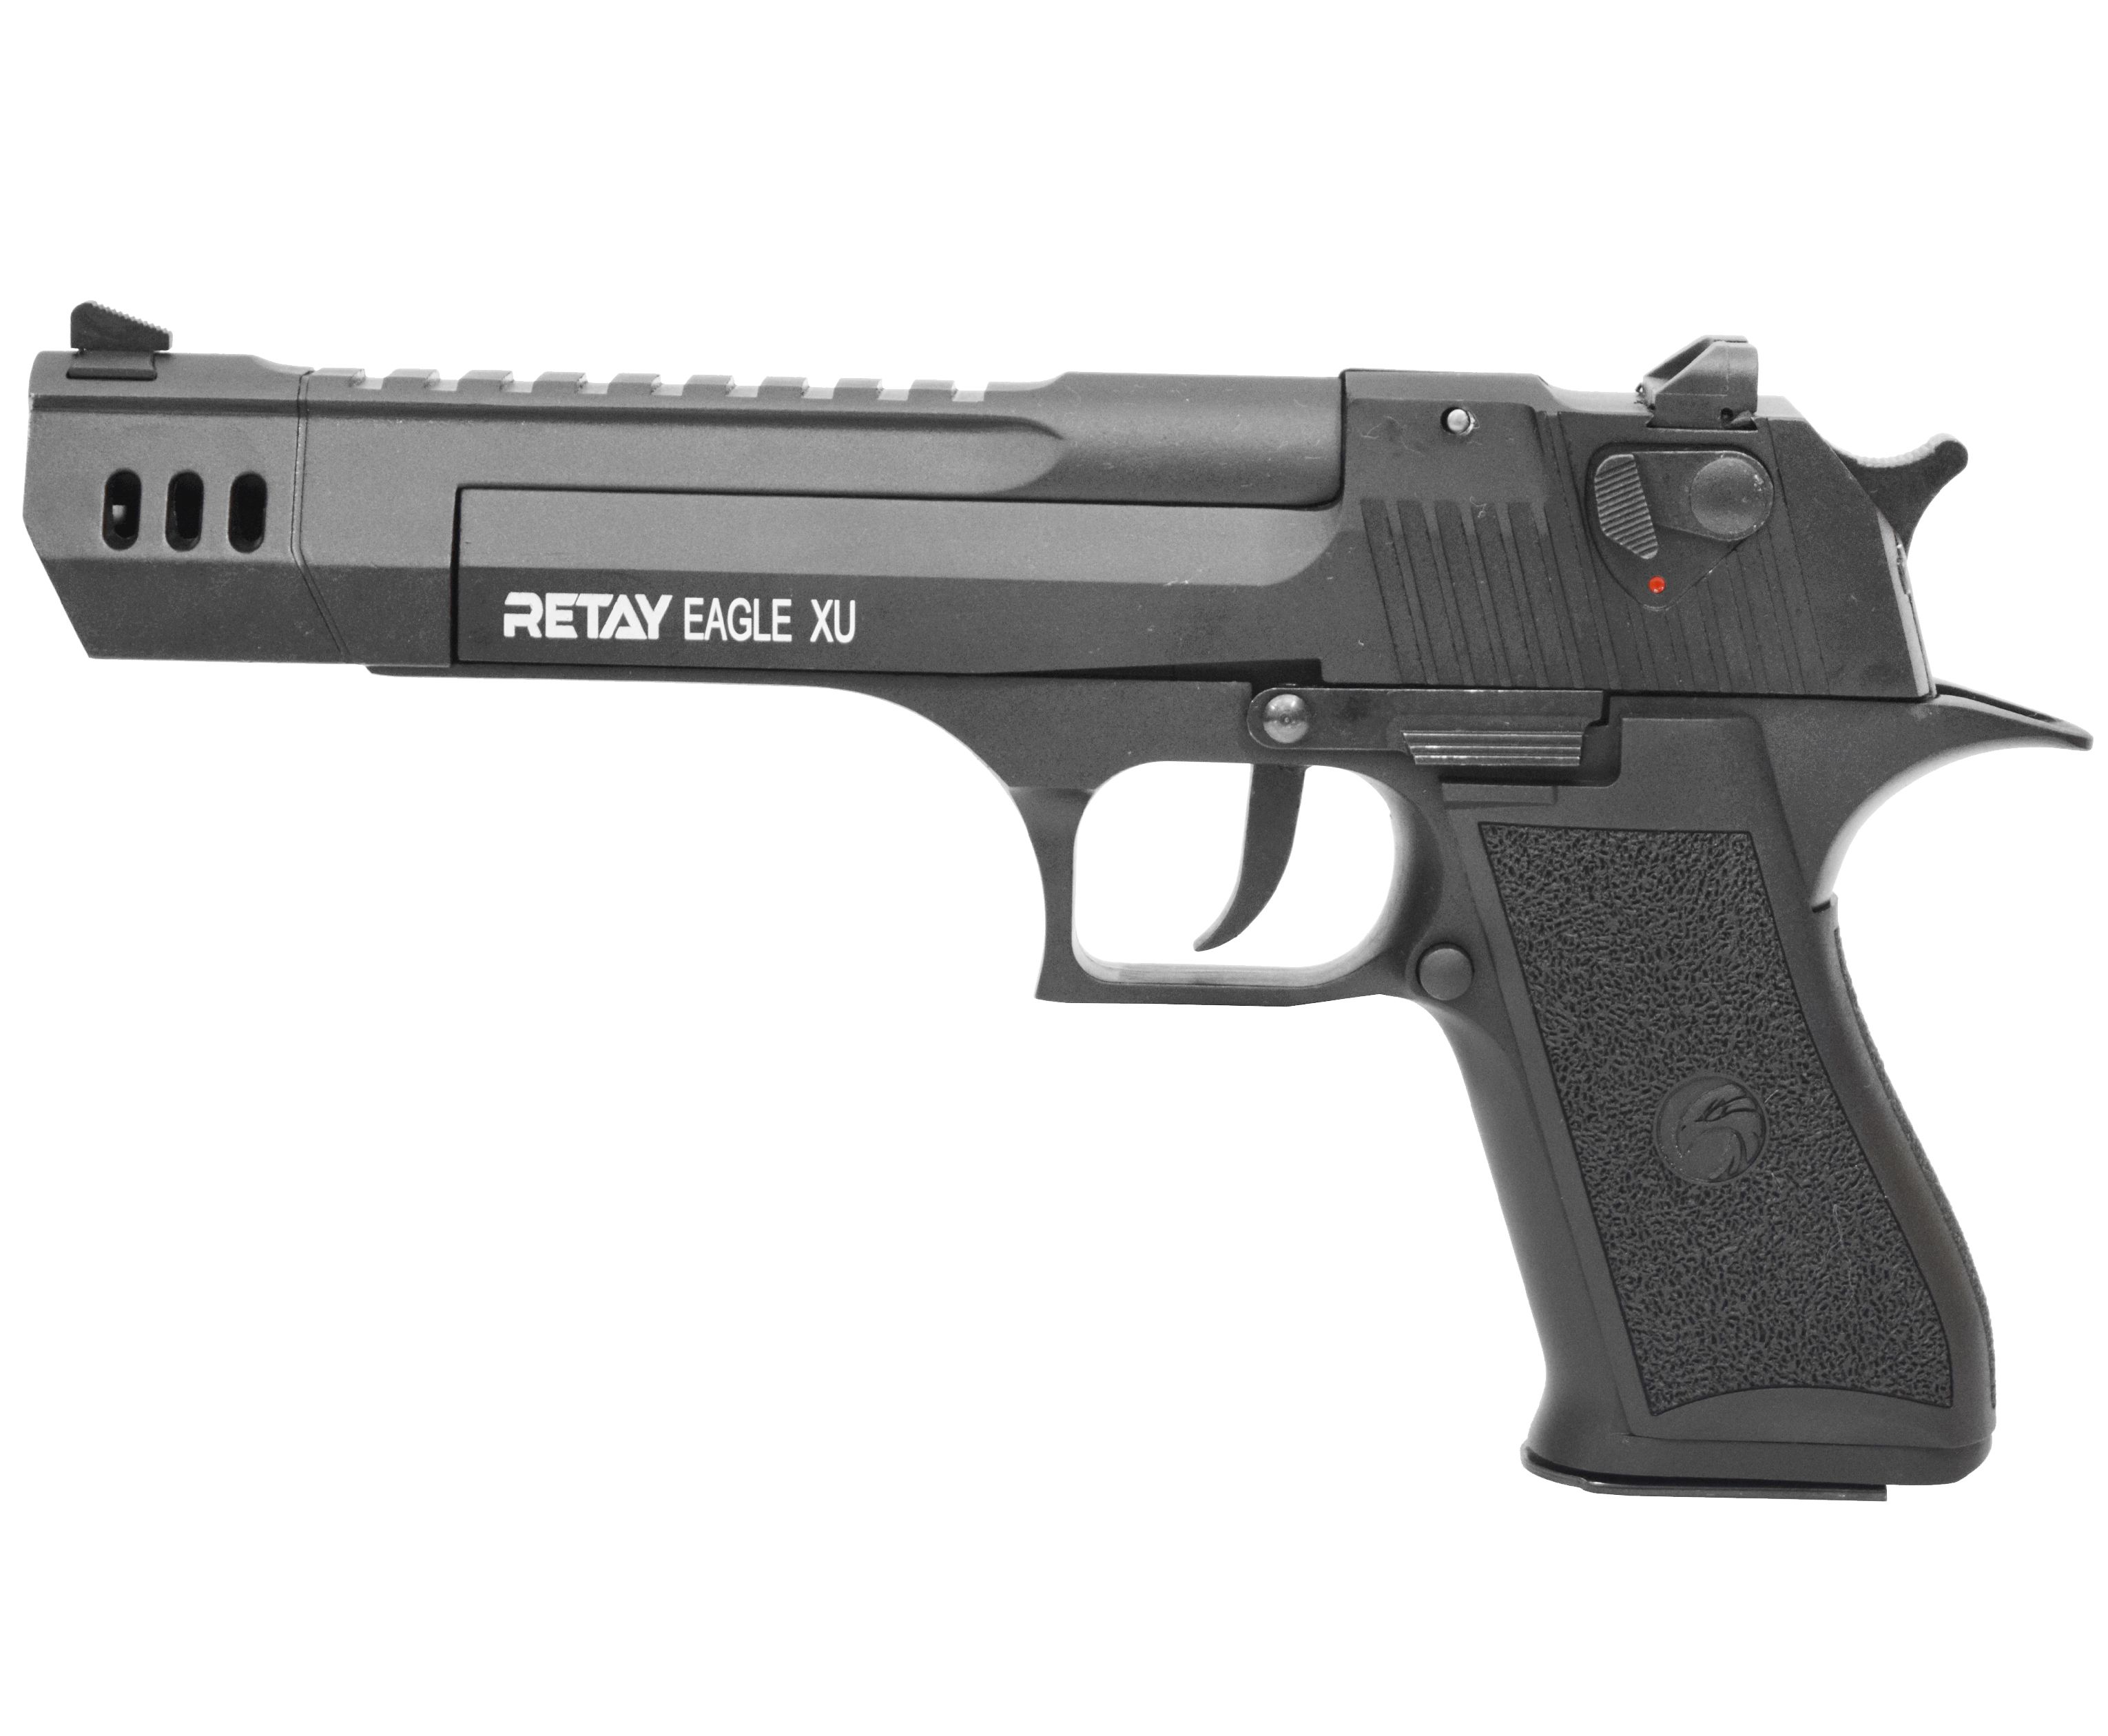  Охолощенный пистолет Retay Eagle XU